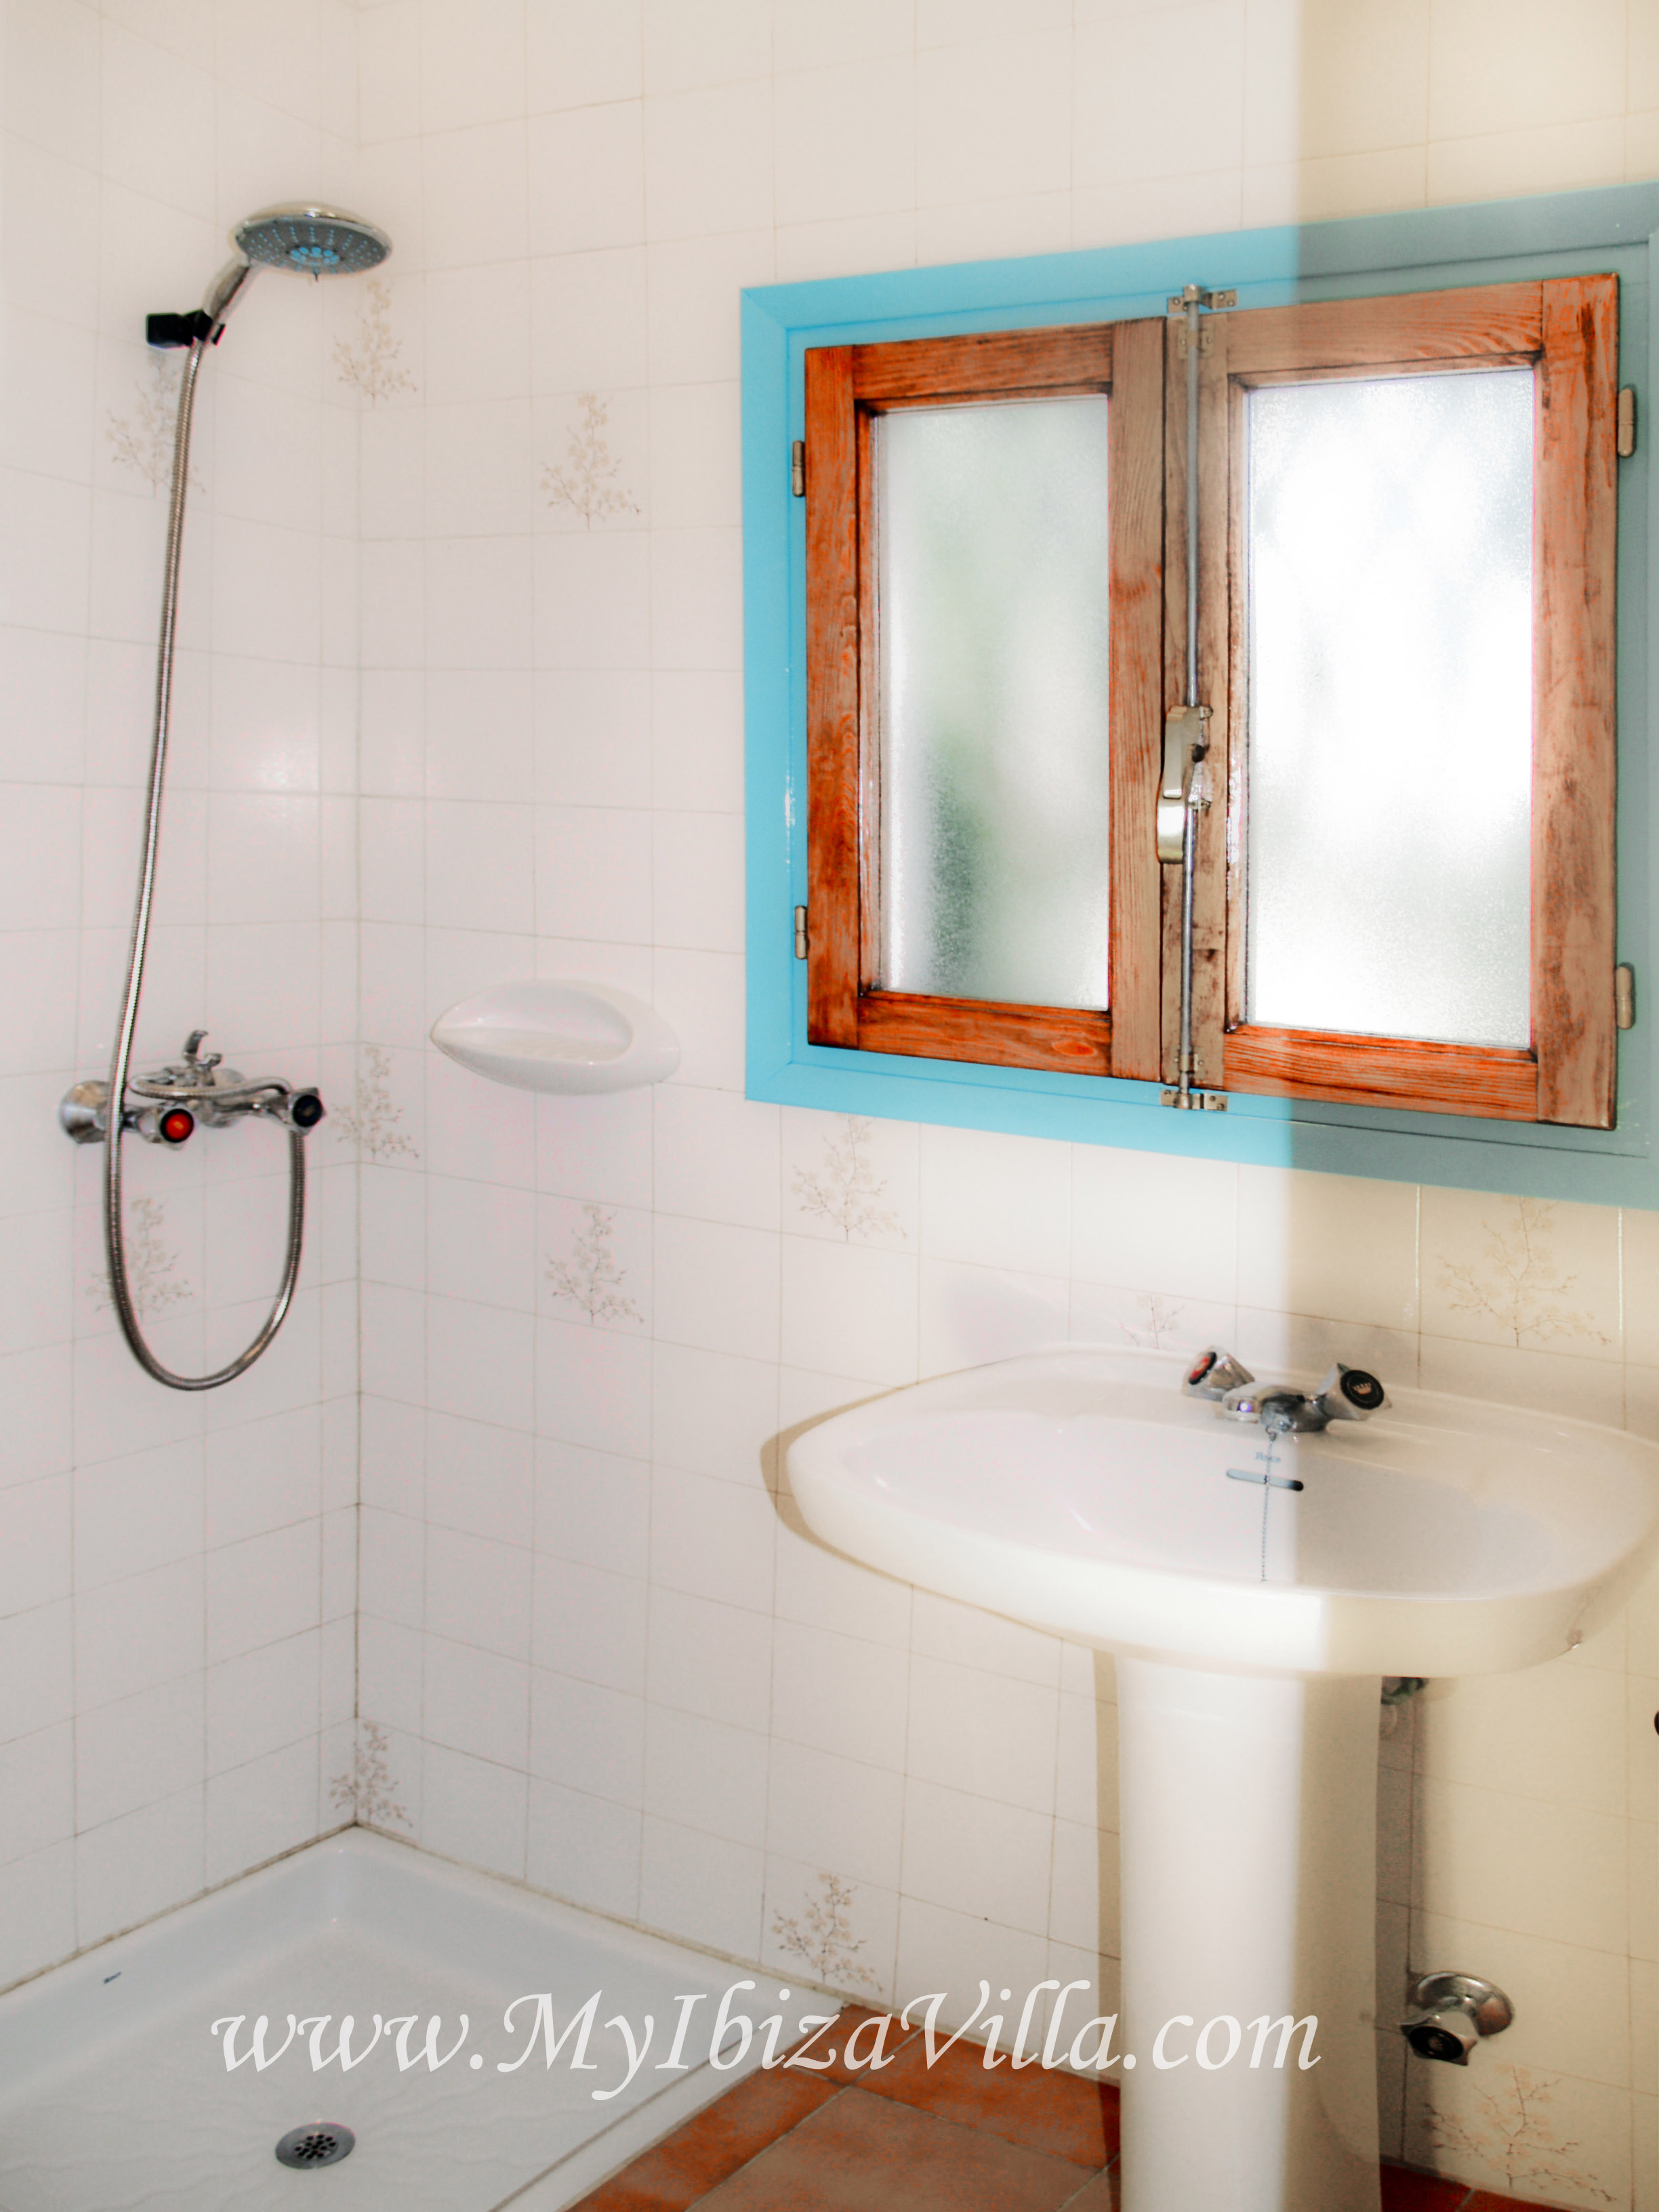 Badkamer met douche, wc en lavabo van deze villa Ibiza.